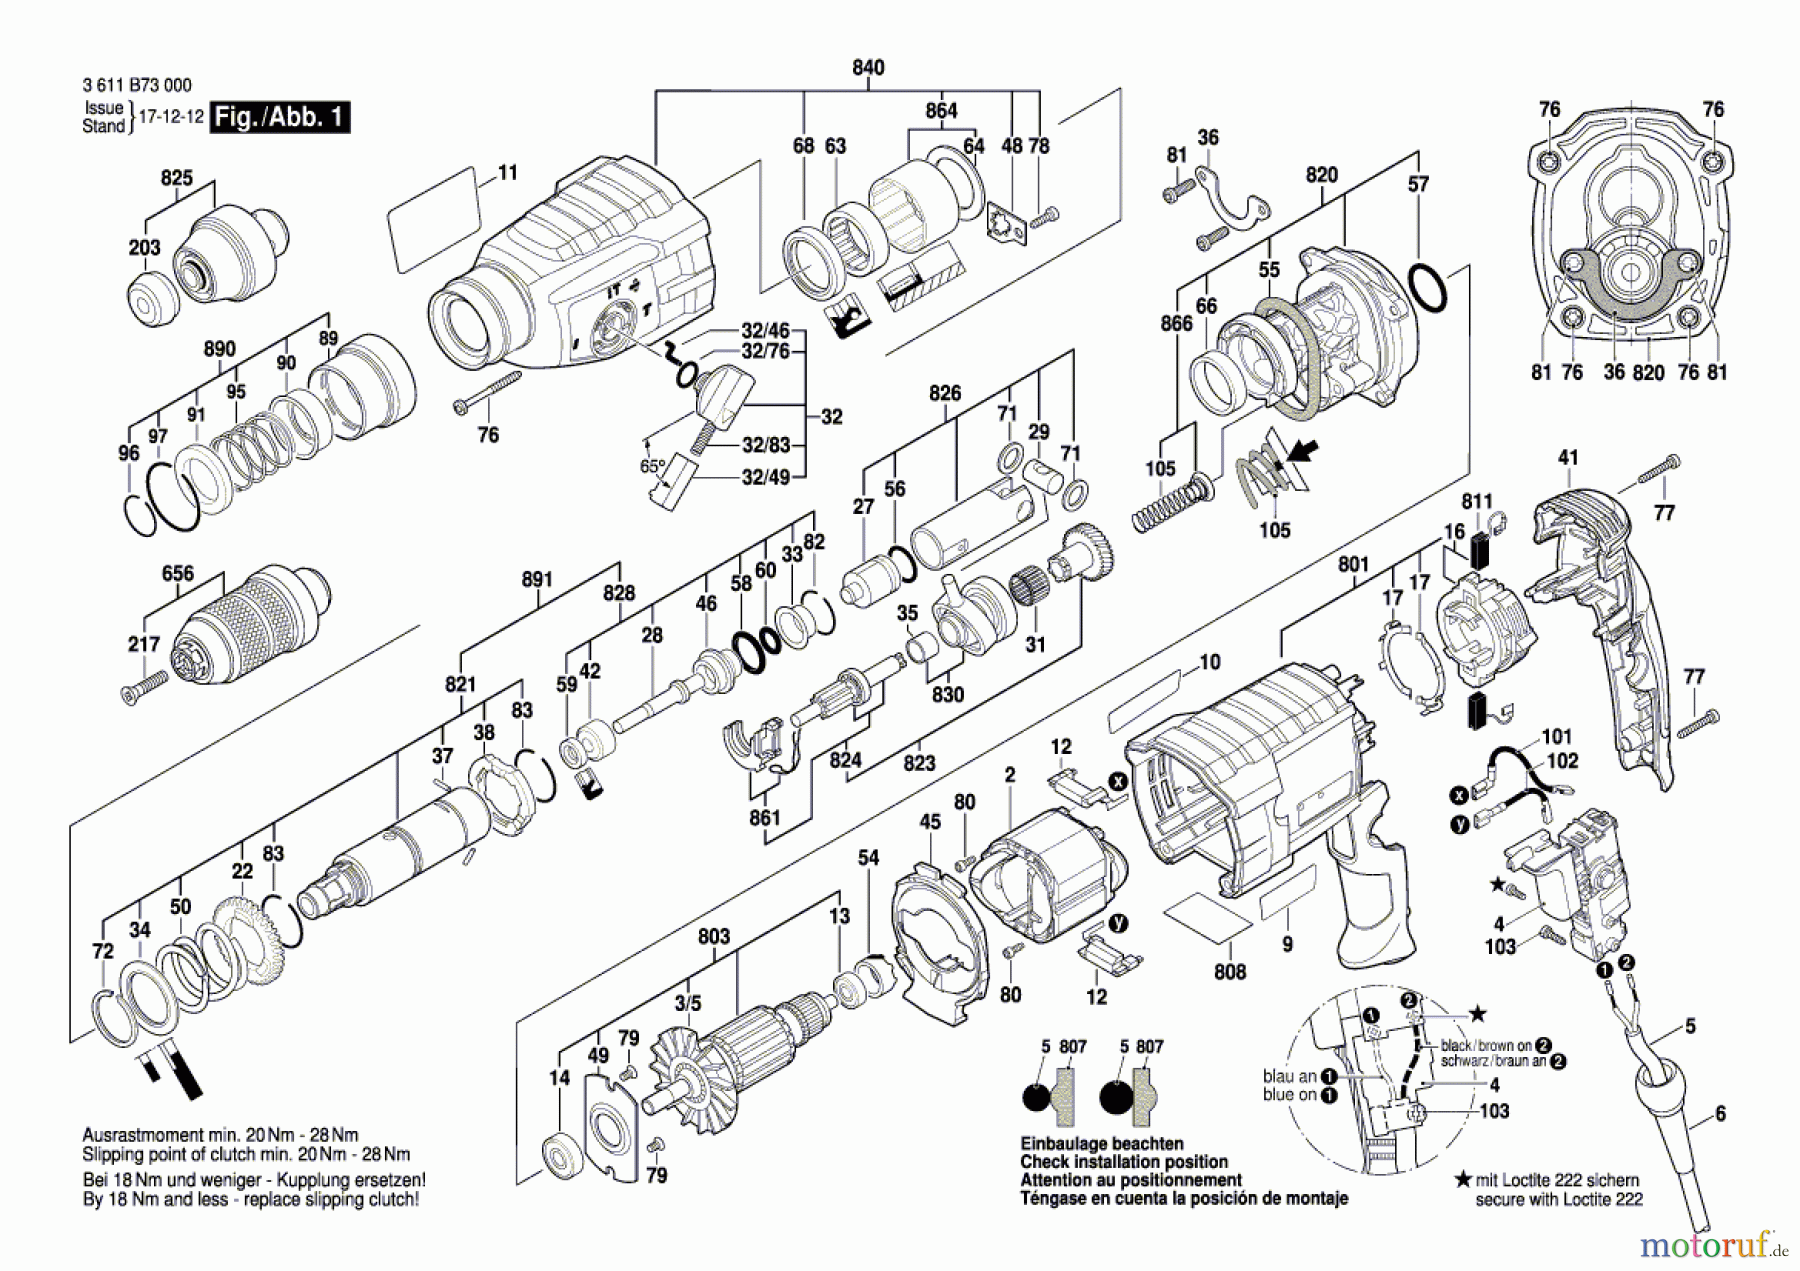  Bosch Werkzeug Bohrhammer GBH 2-24 DFR Seite 1